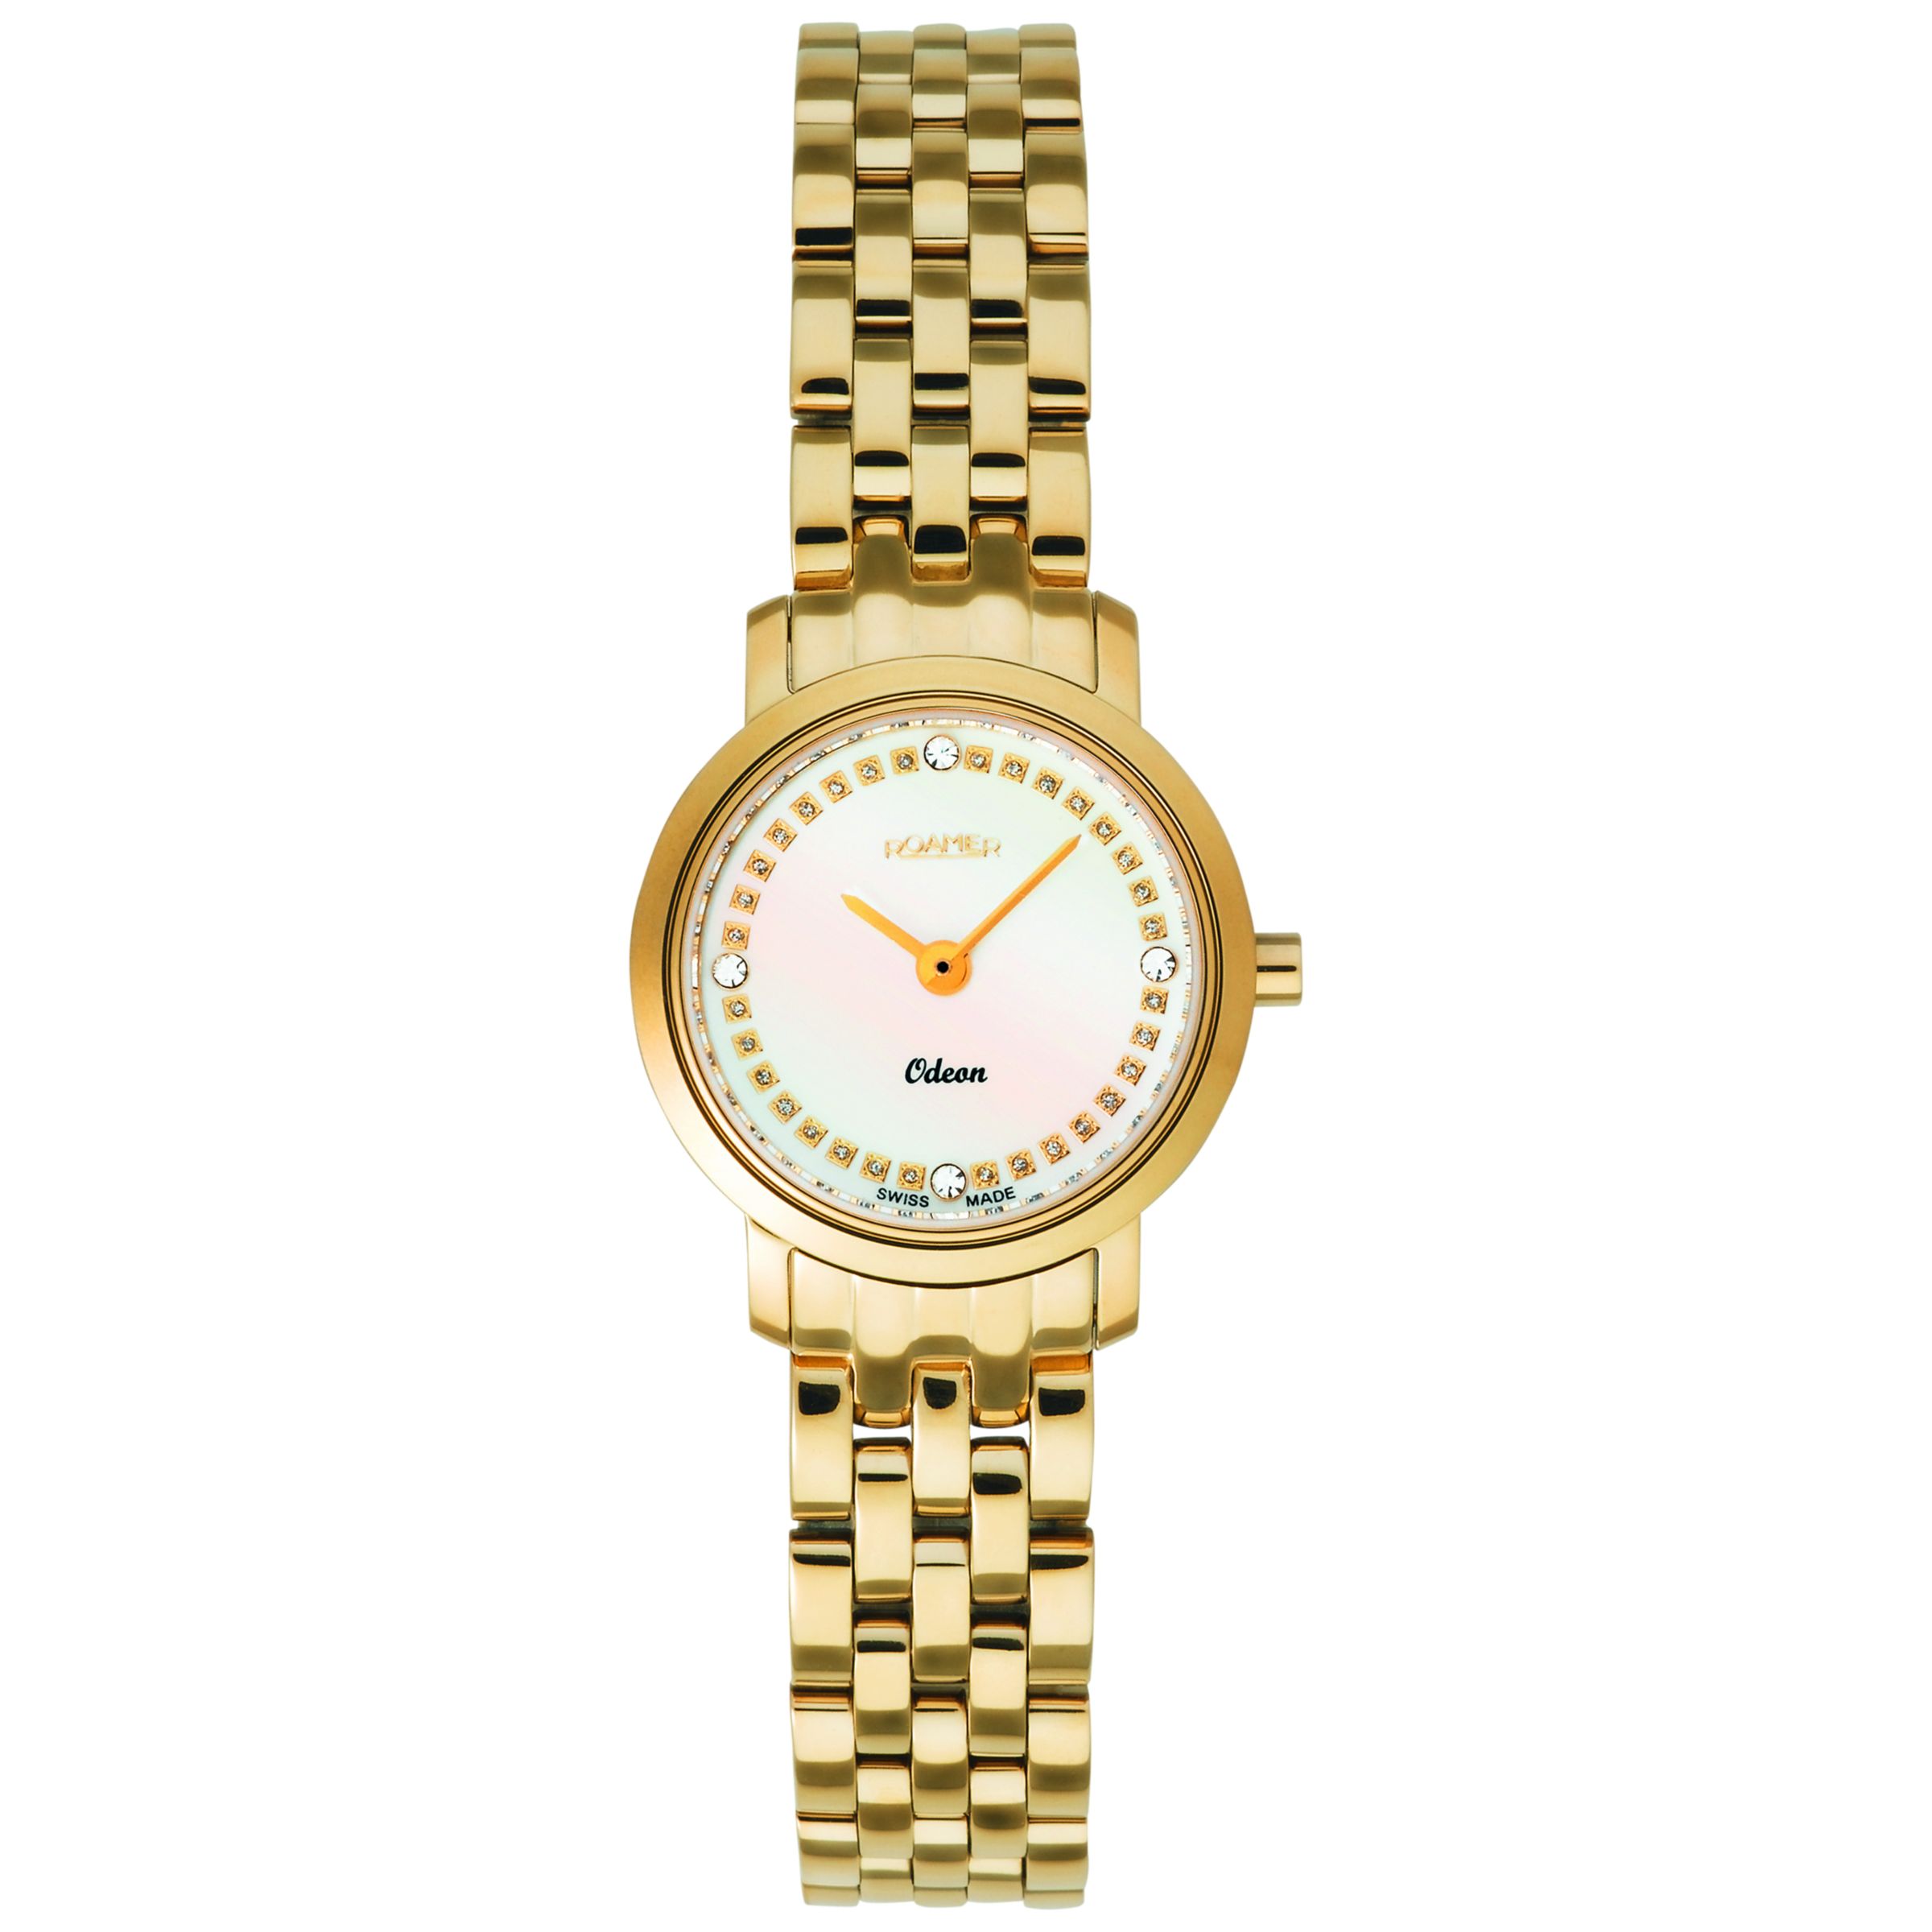 Roamer Odeon 931830 48 89 90 Women's Steel Bracelet Watch, Gold